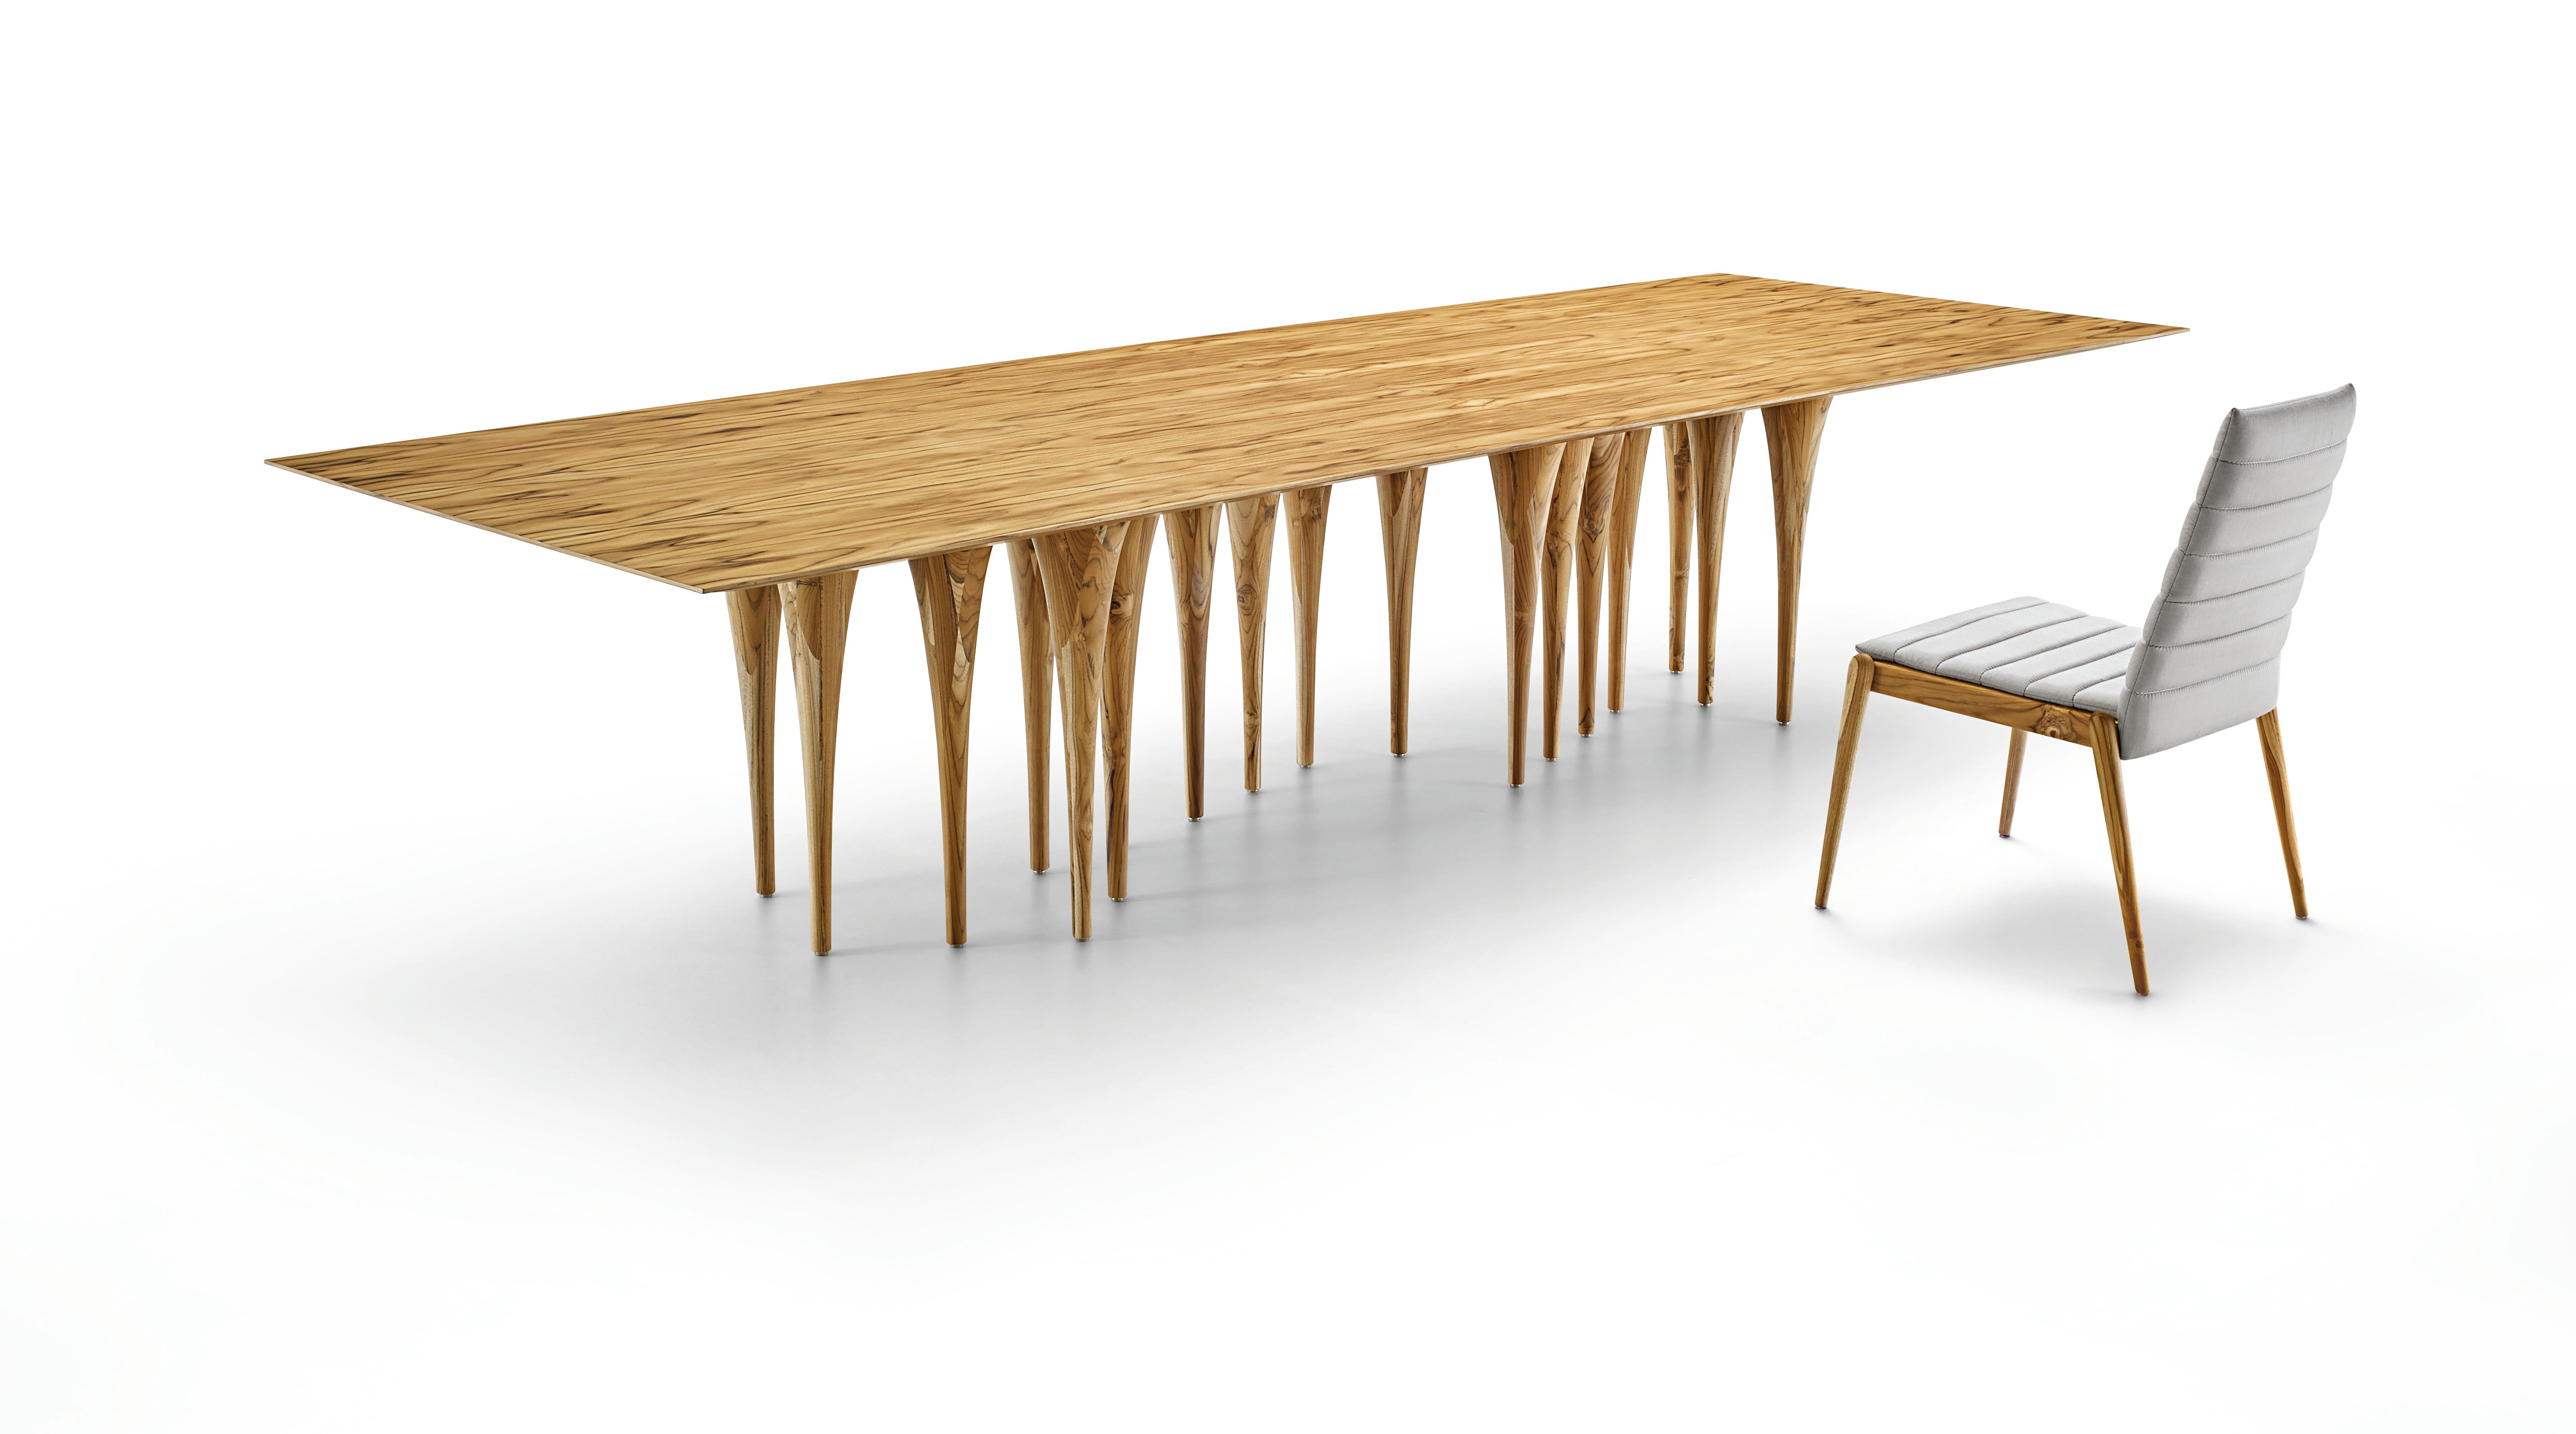 L'équipe d'Uultis a créé cette table Pin rectangulaire en bois de teck avec seize pieds, ce qui crée un impact surprenant au premier coup d'œil. Elle a une structure très singulière et originale qui rappelle les couloirs des châteaux gothiques, mais